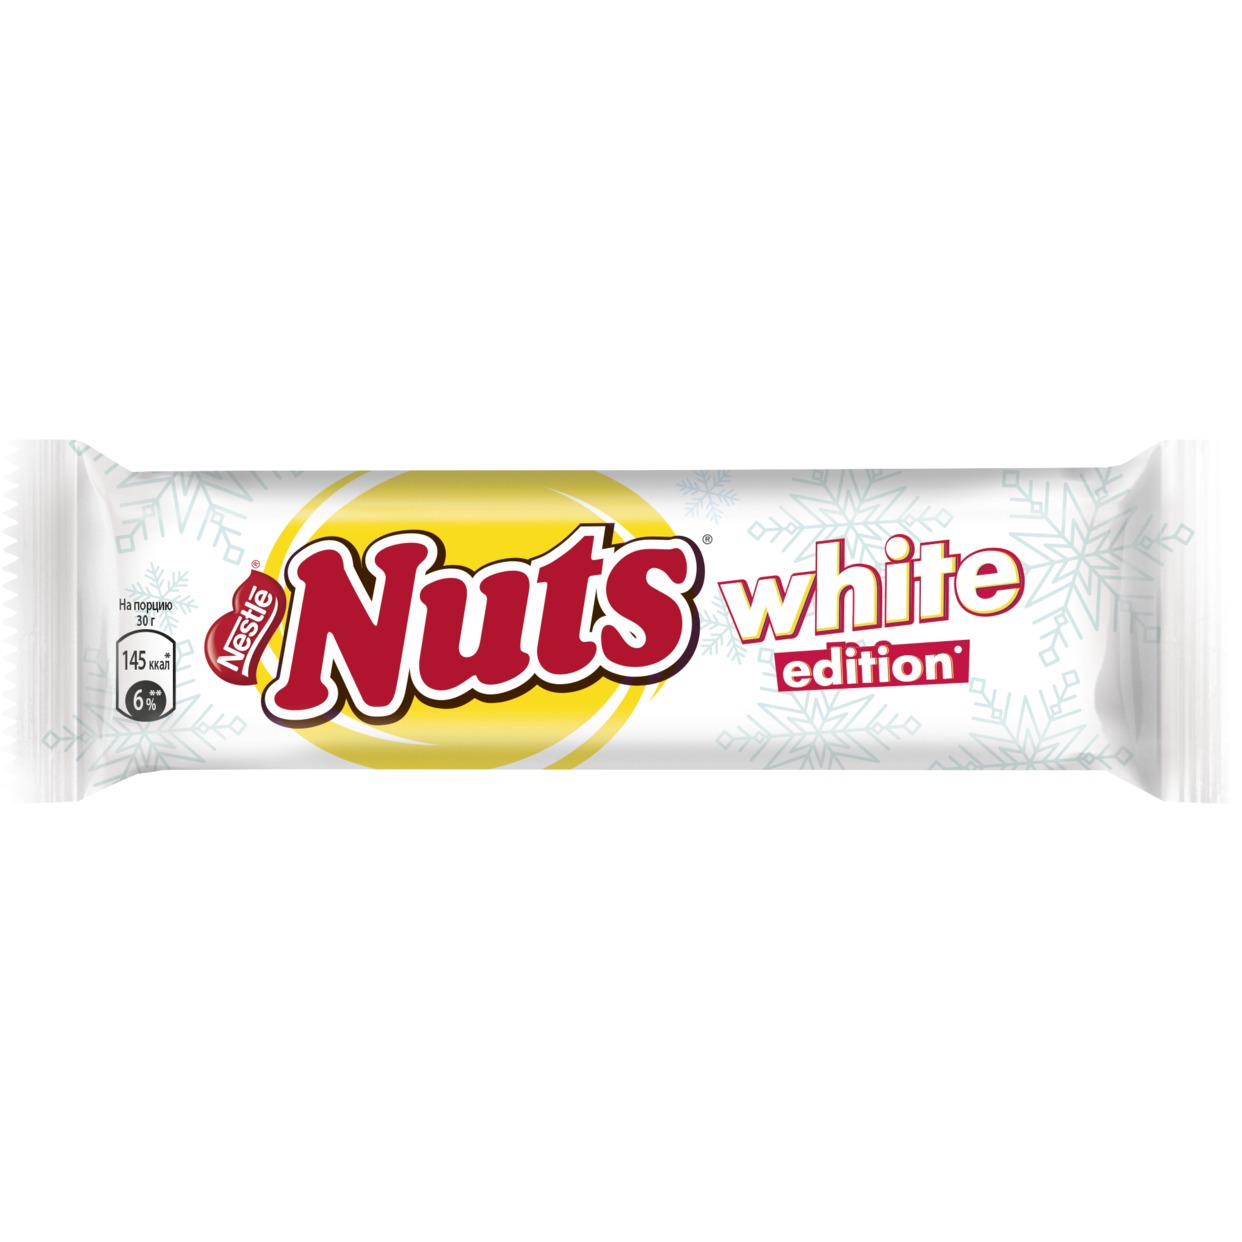 NUTS. Белый. Конфета, покрытая белым шоколадом 60г по акции в Пятерочке